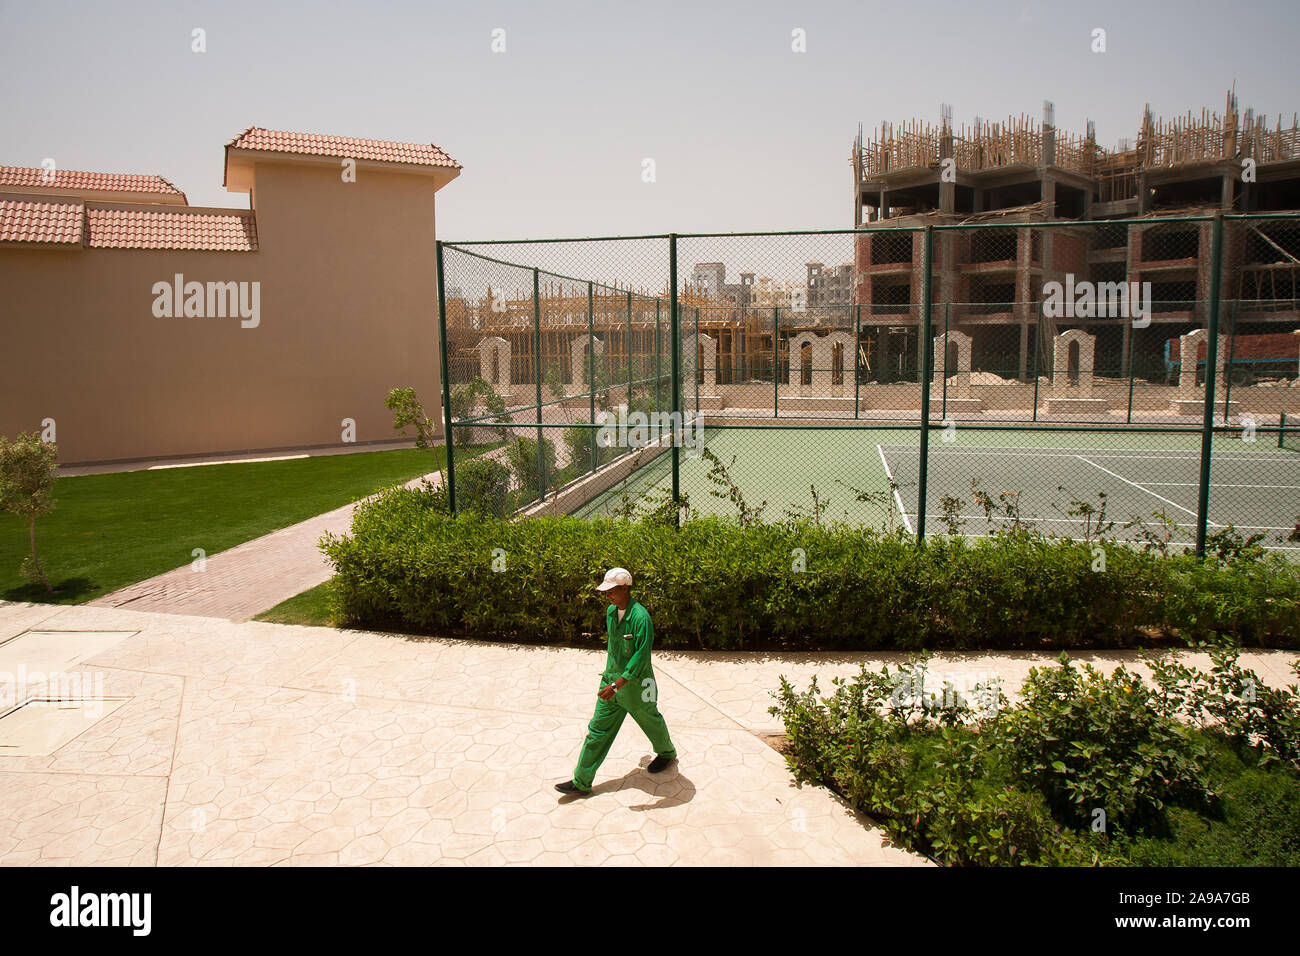 Hurghada, Egitto, 27 Aprile 2008: un lavoratore passa in un hotel con campi da tennis vicino a un grande sito di costruzione di un nuovo hotel. Foto Stock